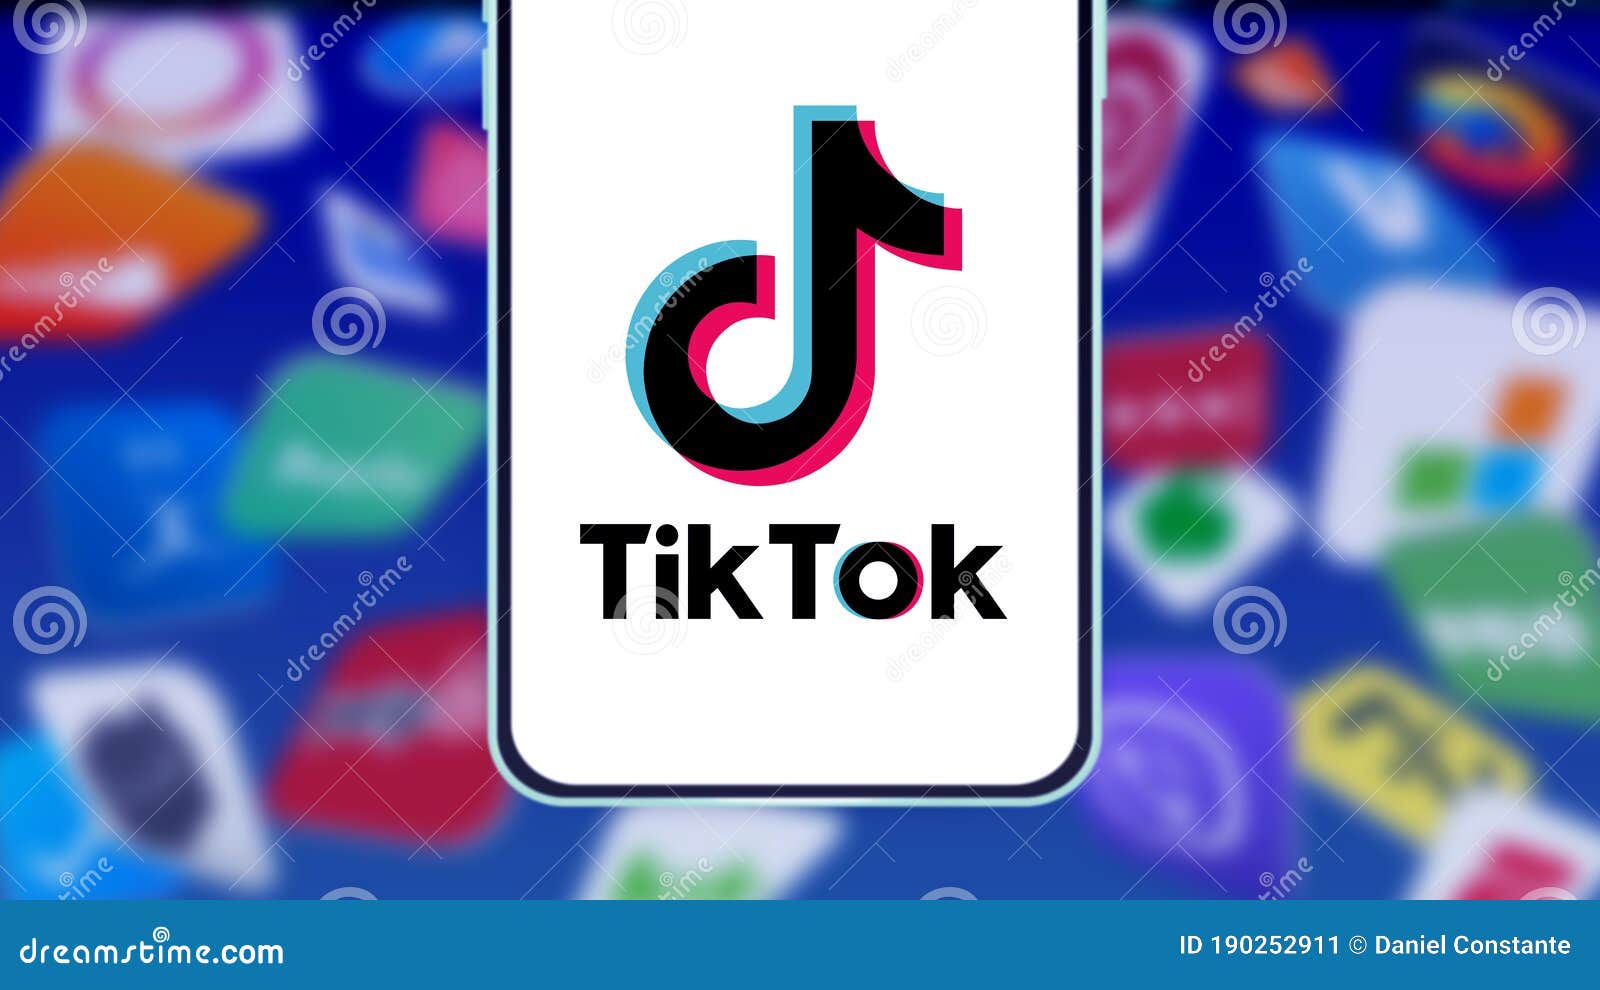 Tik Tok Phone Clip Art